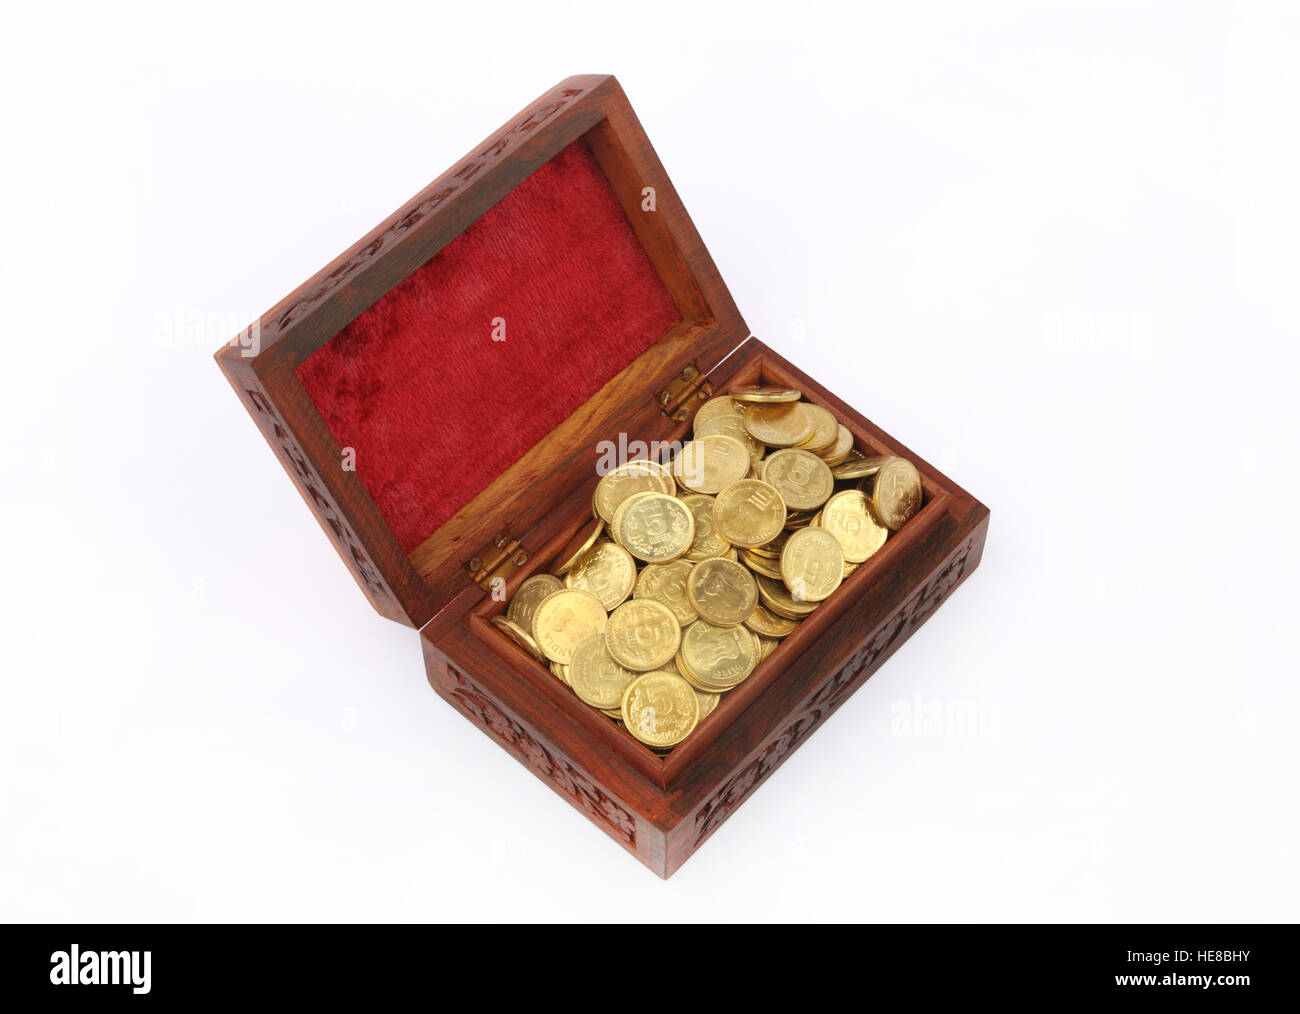 Trastero De Monedas De Oro Con Una Caja De Metal Fuerte Y Un